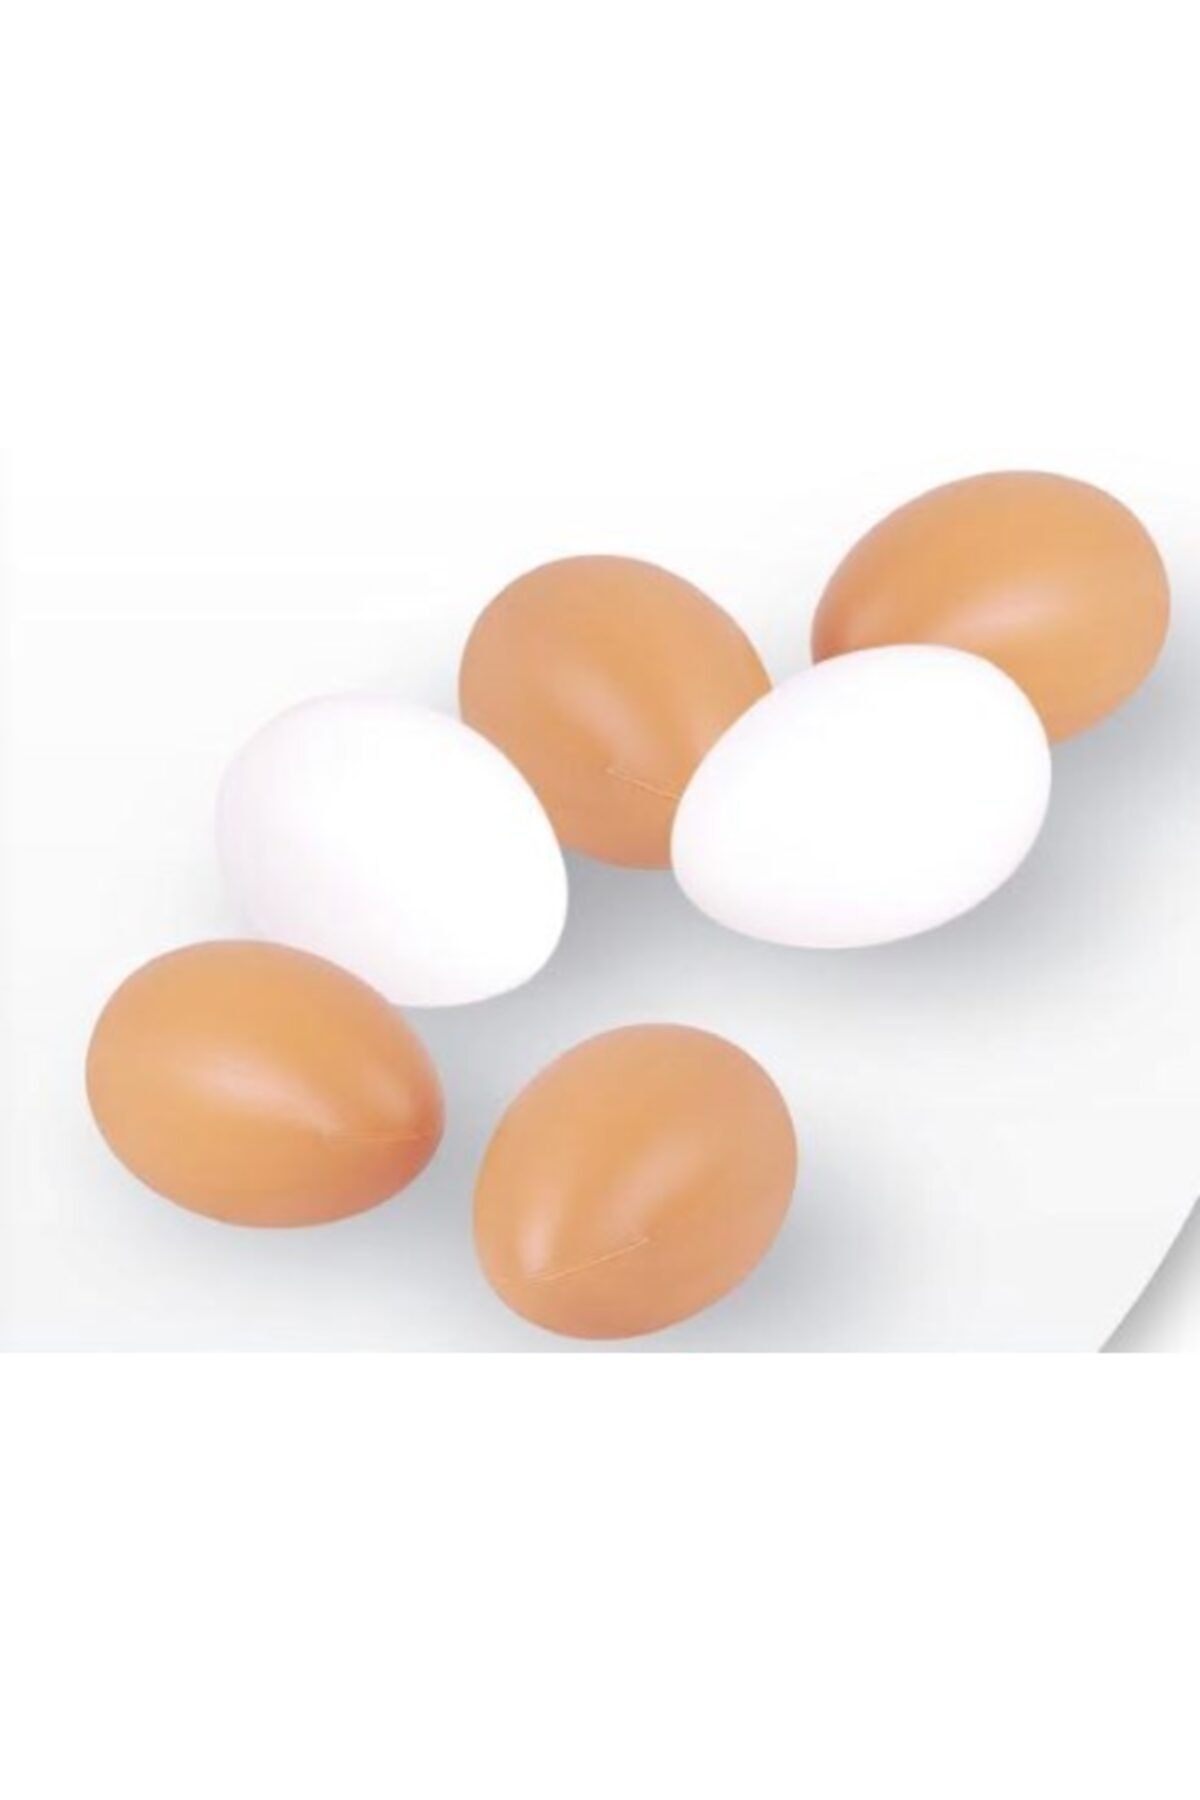 boraninciftligi Sahte Tavuk Yumurtası 10 Adet